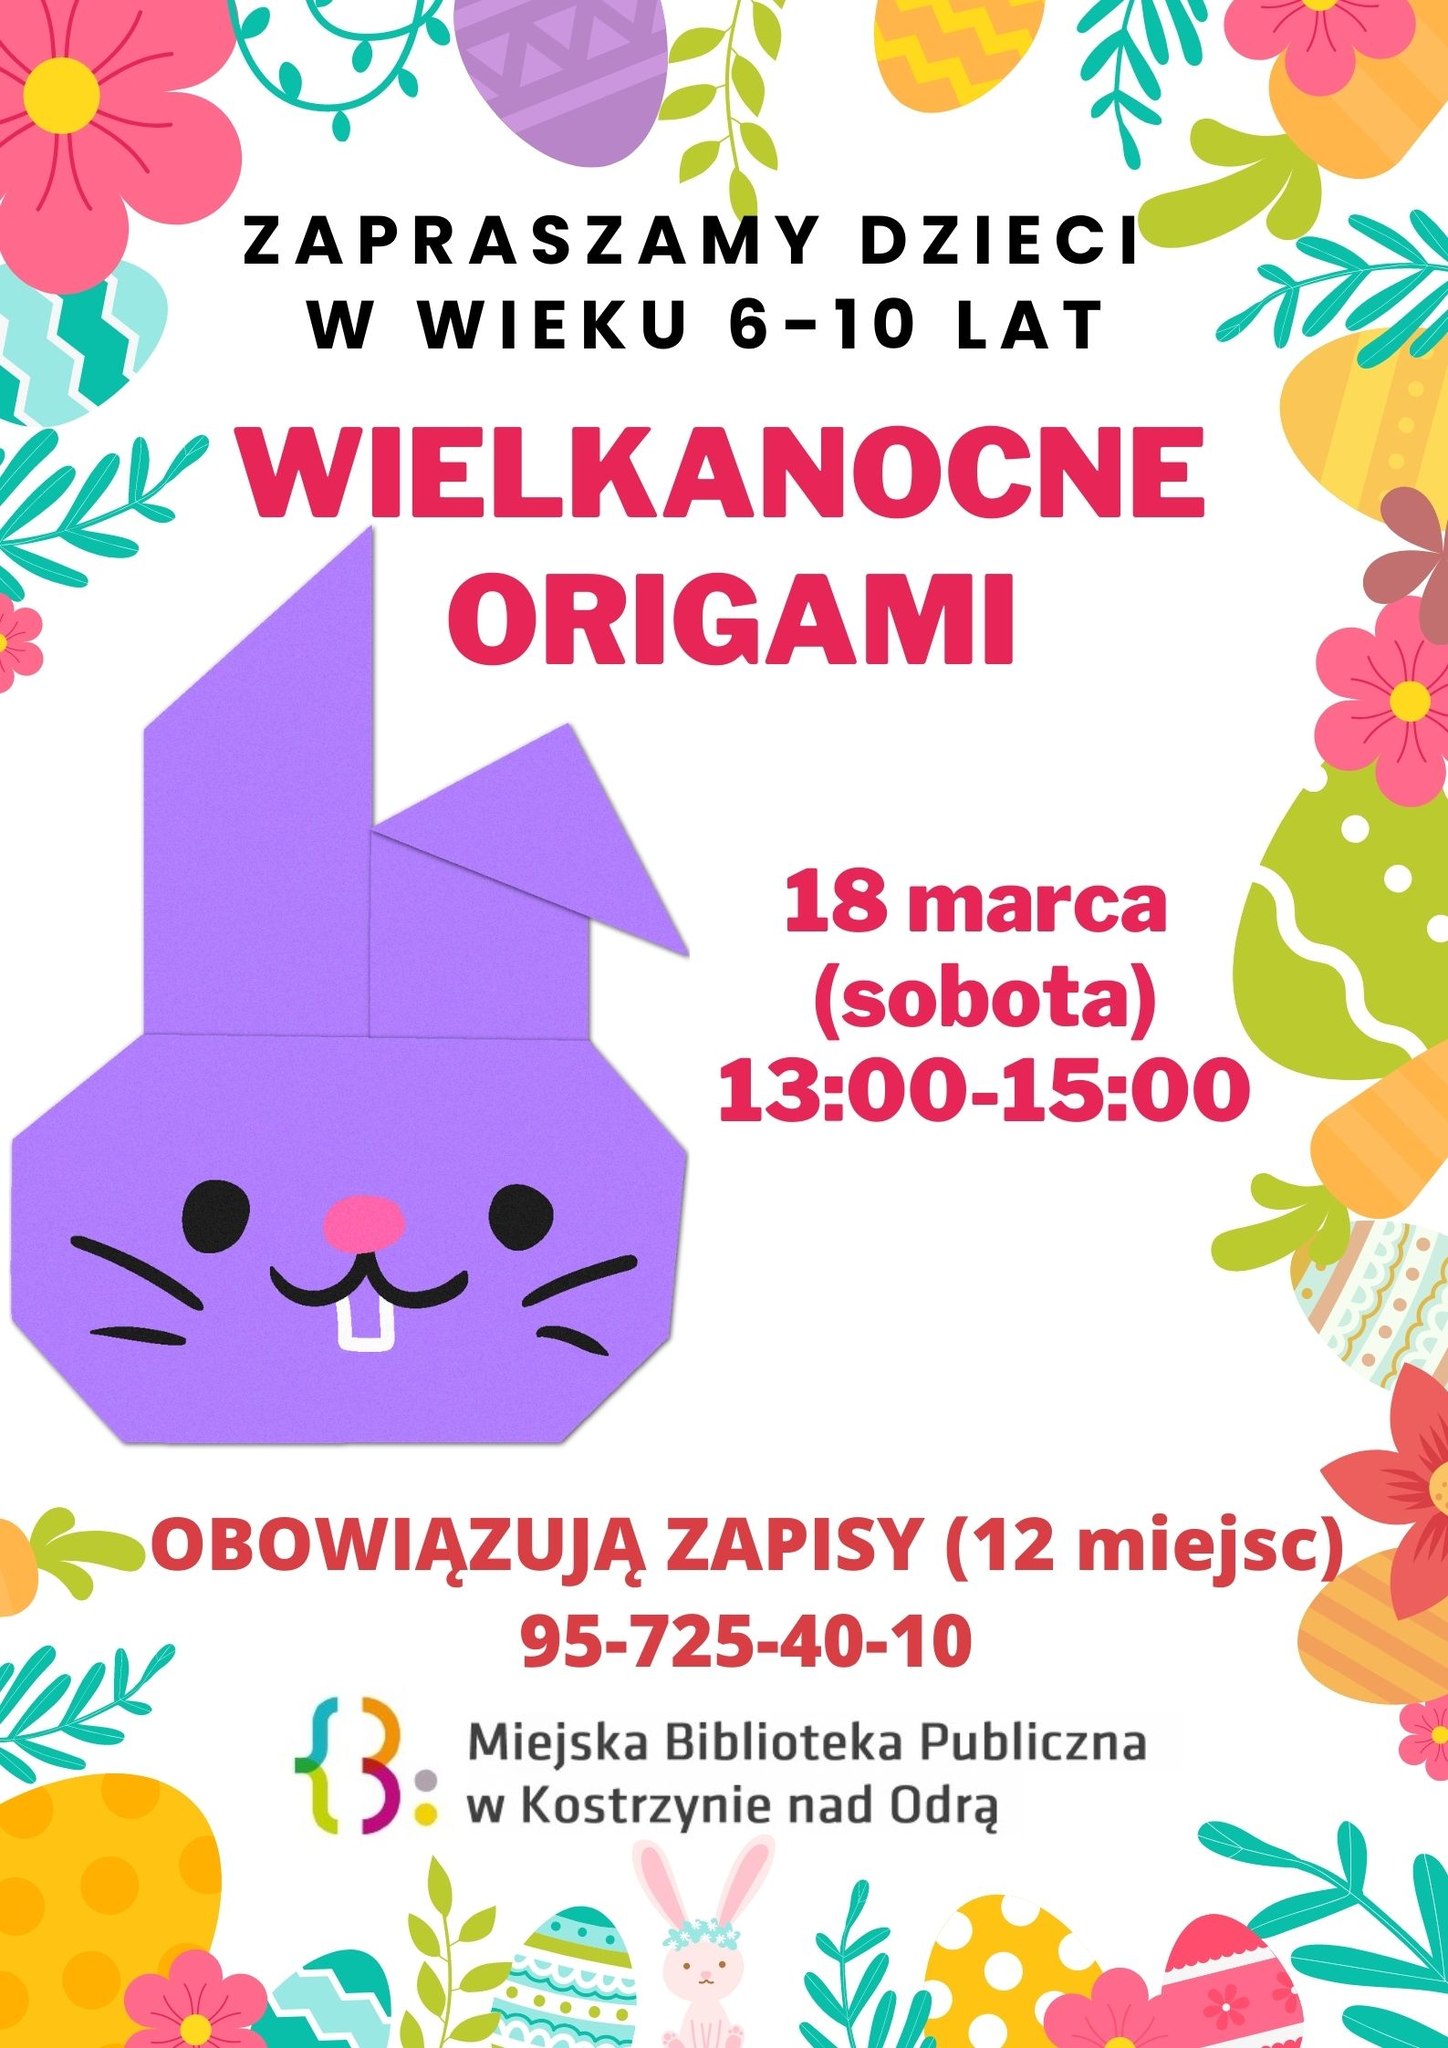 Plakat informacyjny - Warsztaty Wielkanocne Origami